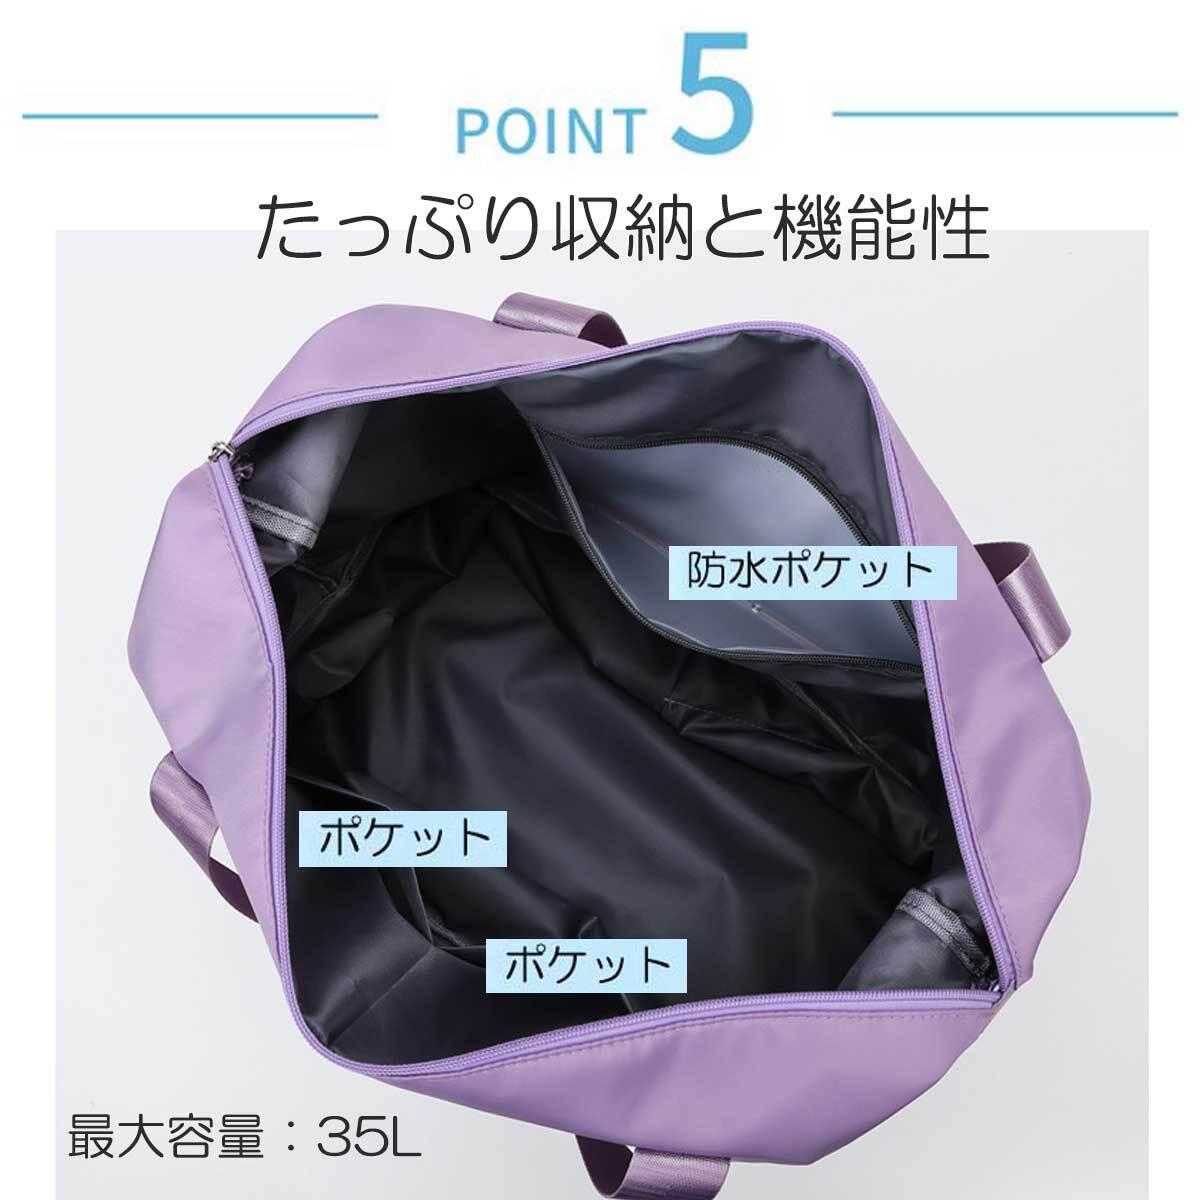 [ сегодня распродажа [ розовый ] сумка "Boston bag" .. путешествие путешествие Carry on женский мужской водонепроницаемый большая вместимость дорожная сумка 20L 35L